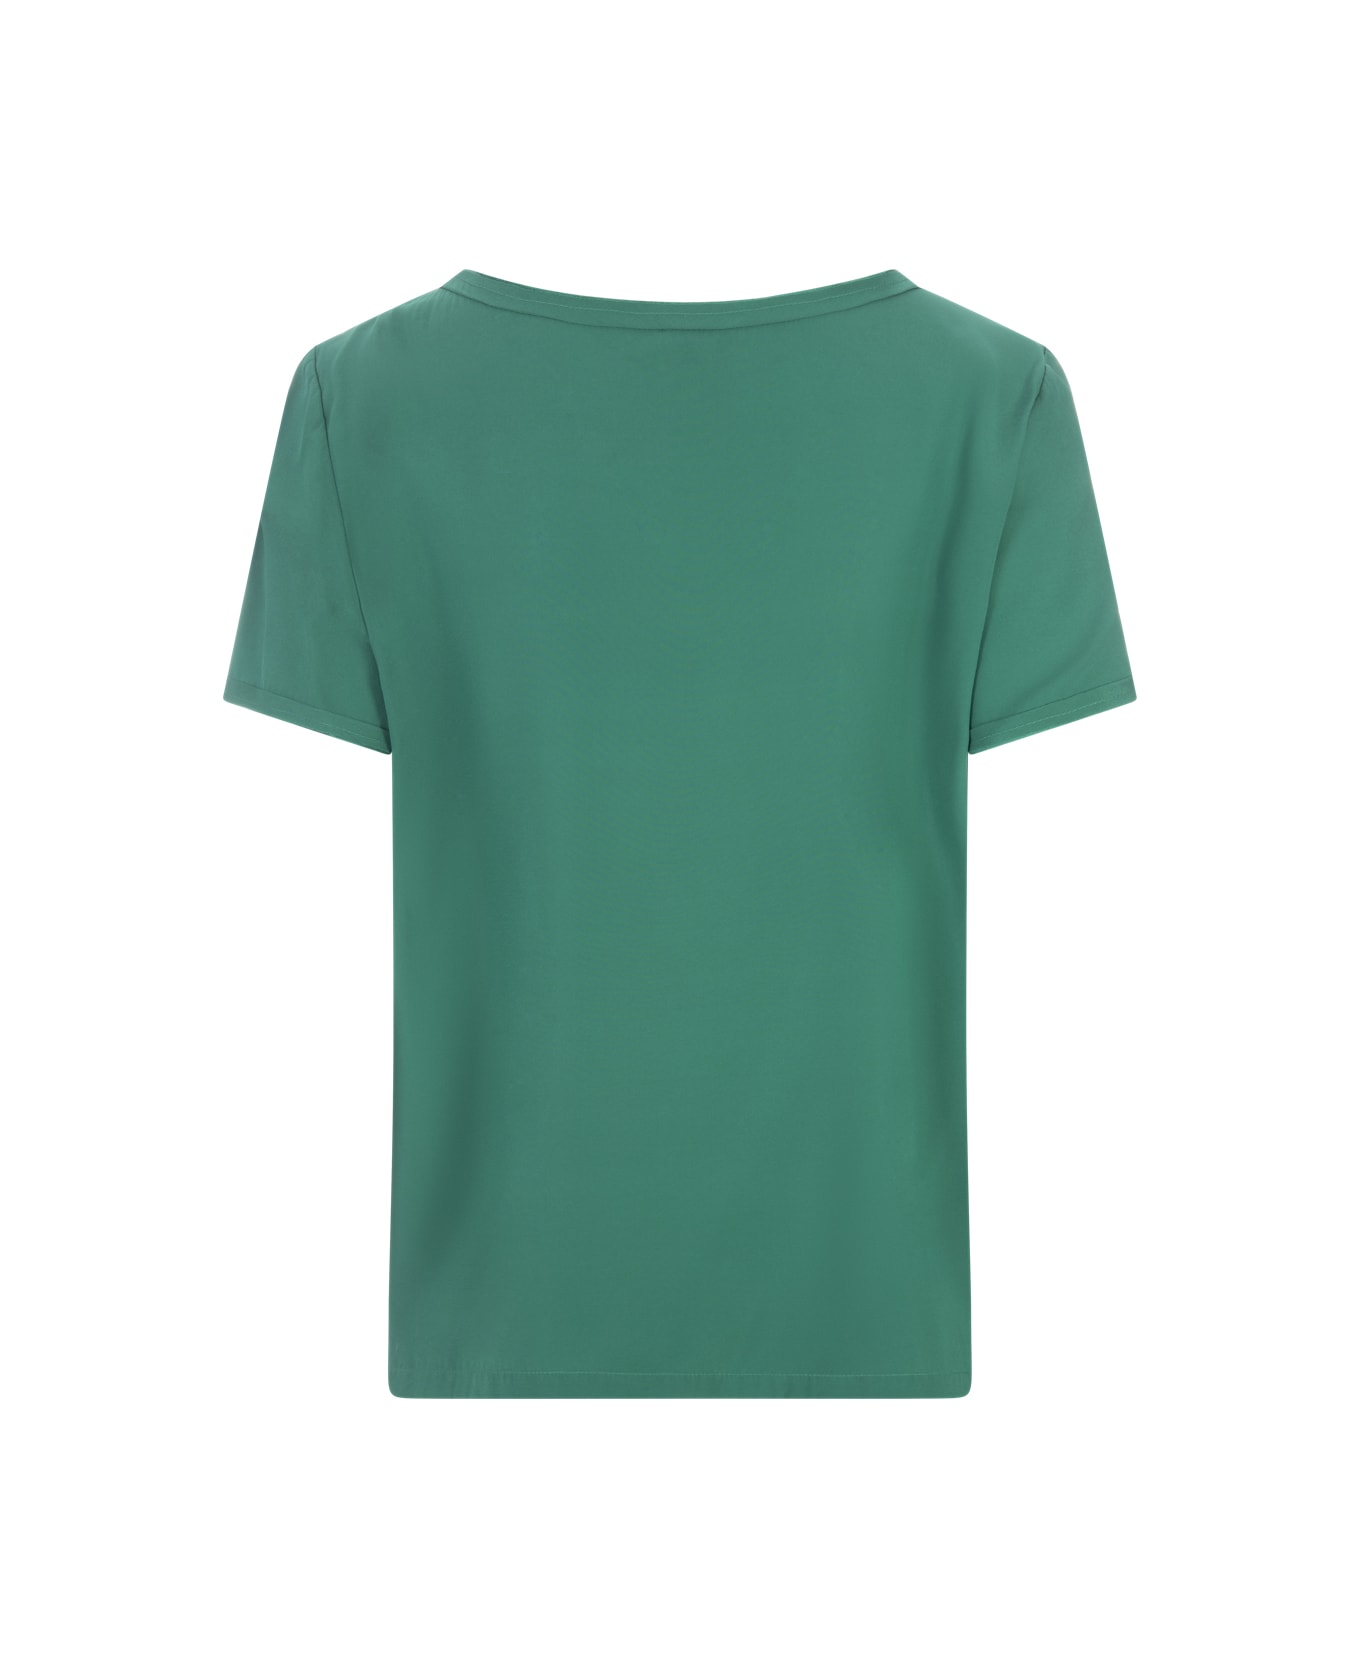 Her Shirt Green Opaque Silk T-shirt - Green